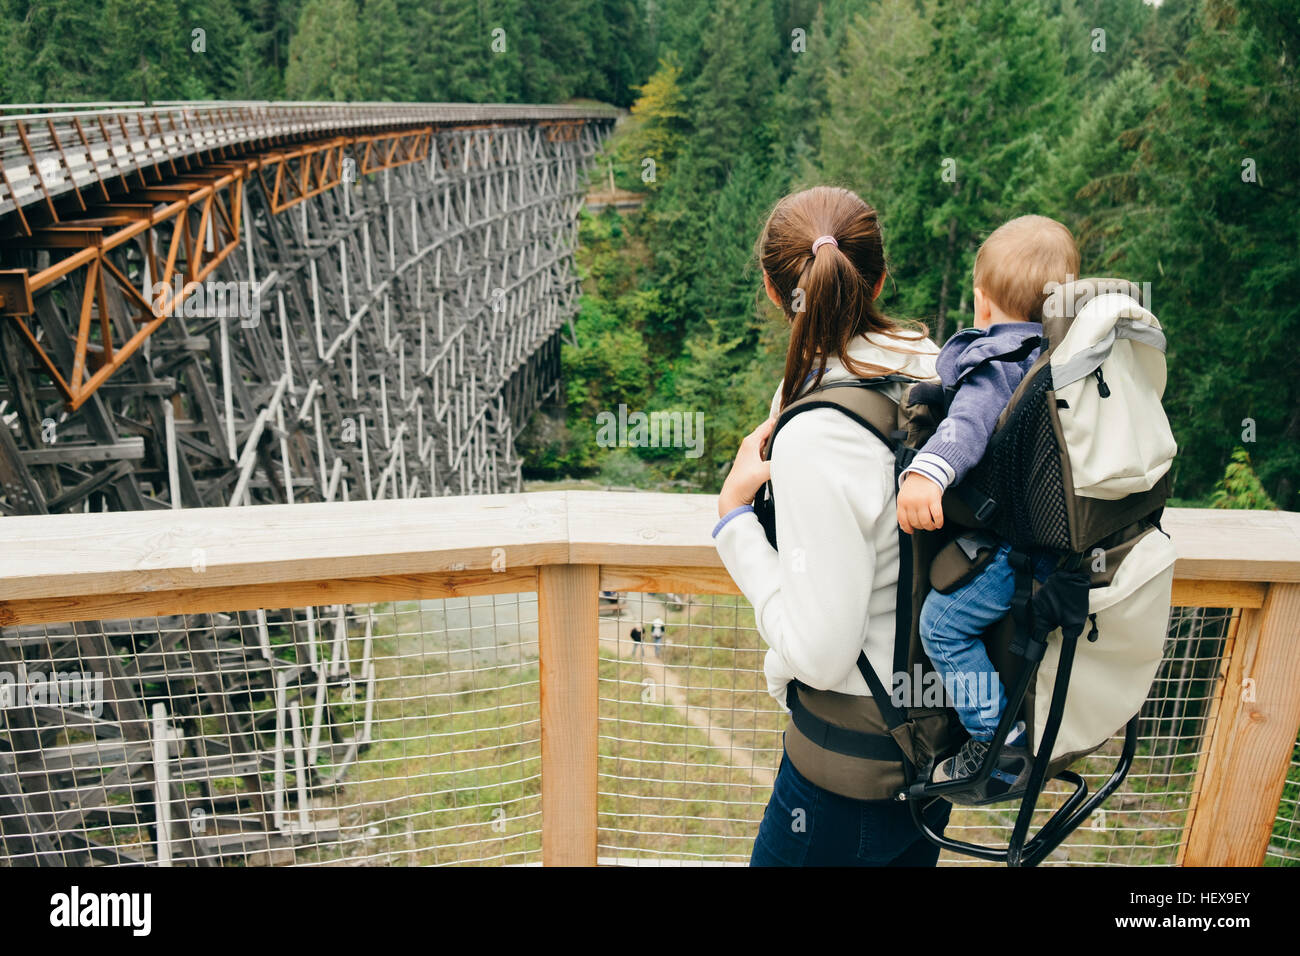 Jeune femme exerçant son fils à l'arrière, vue arrière, pont sur chevalets Kinsol, British Columbia, Canada Banque D'Images